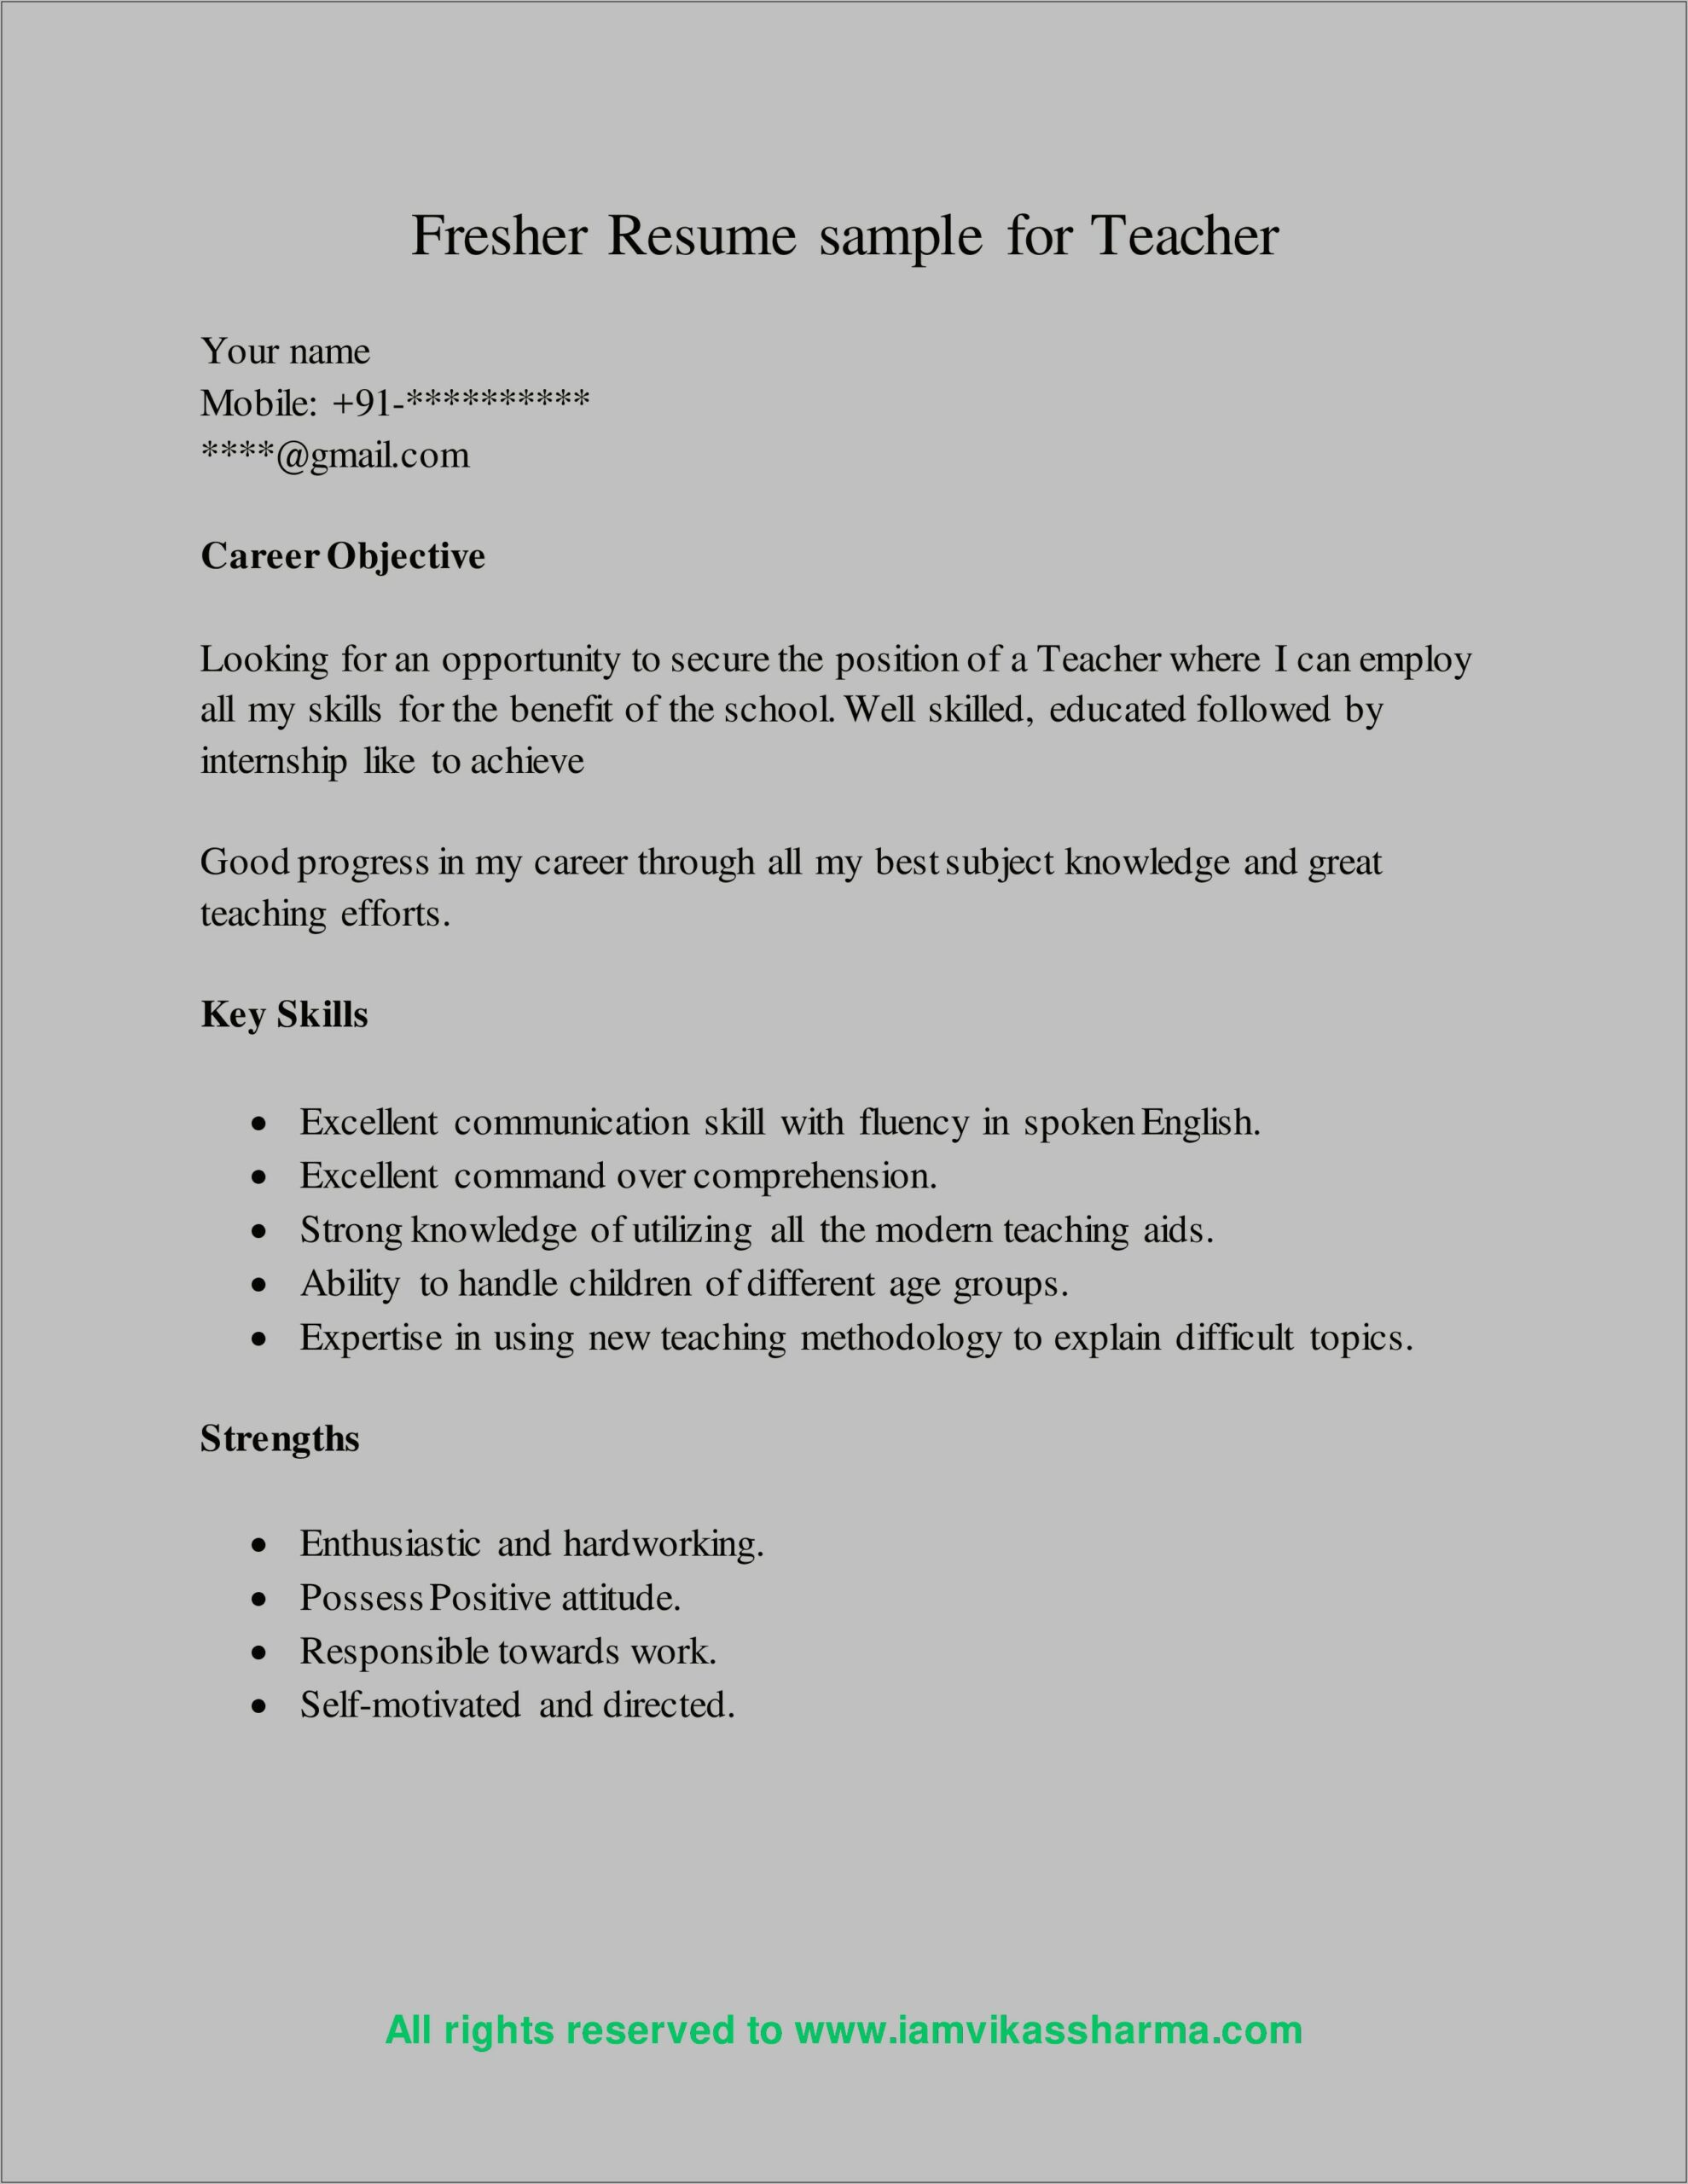 Sample Resume For Teachers Freshers Pdf